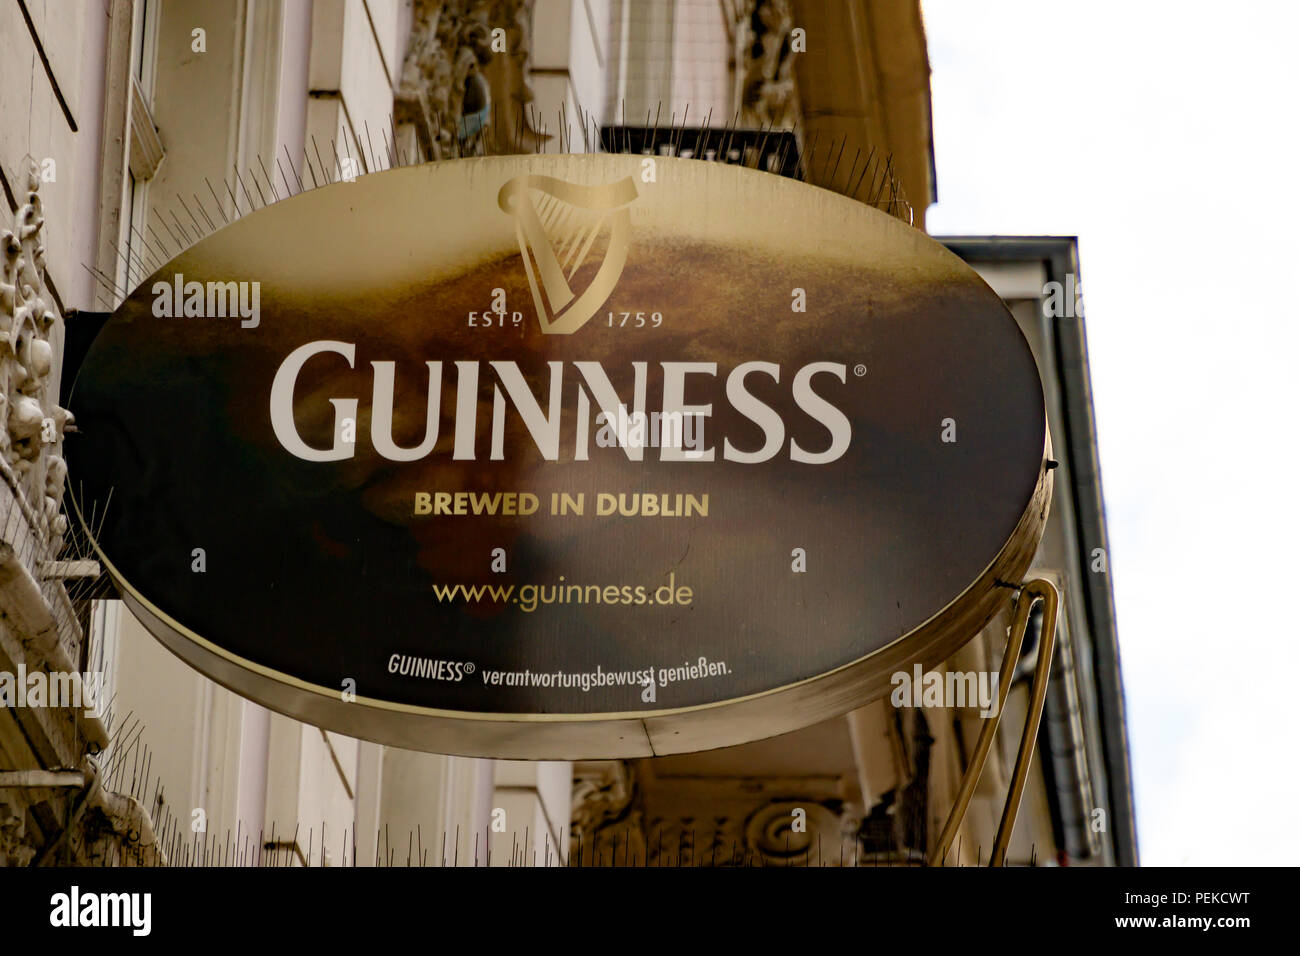 Wiesbaden, Allemagne - 03 juin 2018 : GUINNESS logo sur une façade. GUINESS est une célèbre bière irlandaise, brassée à Dublin. Banque D'Images